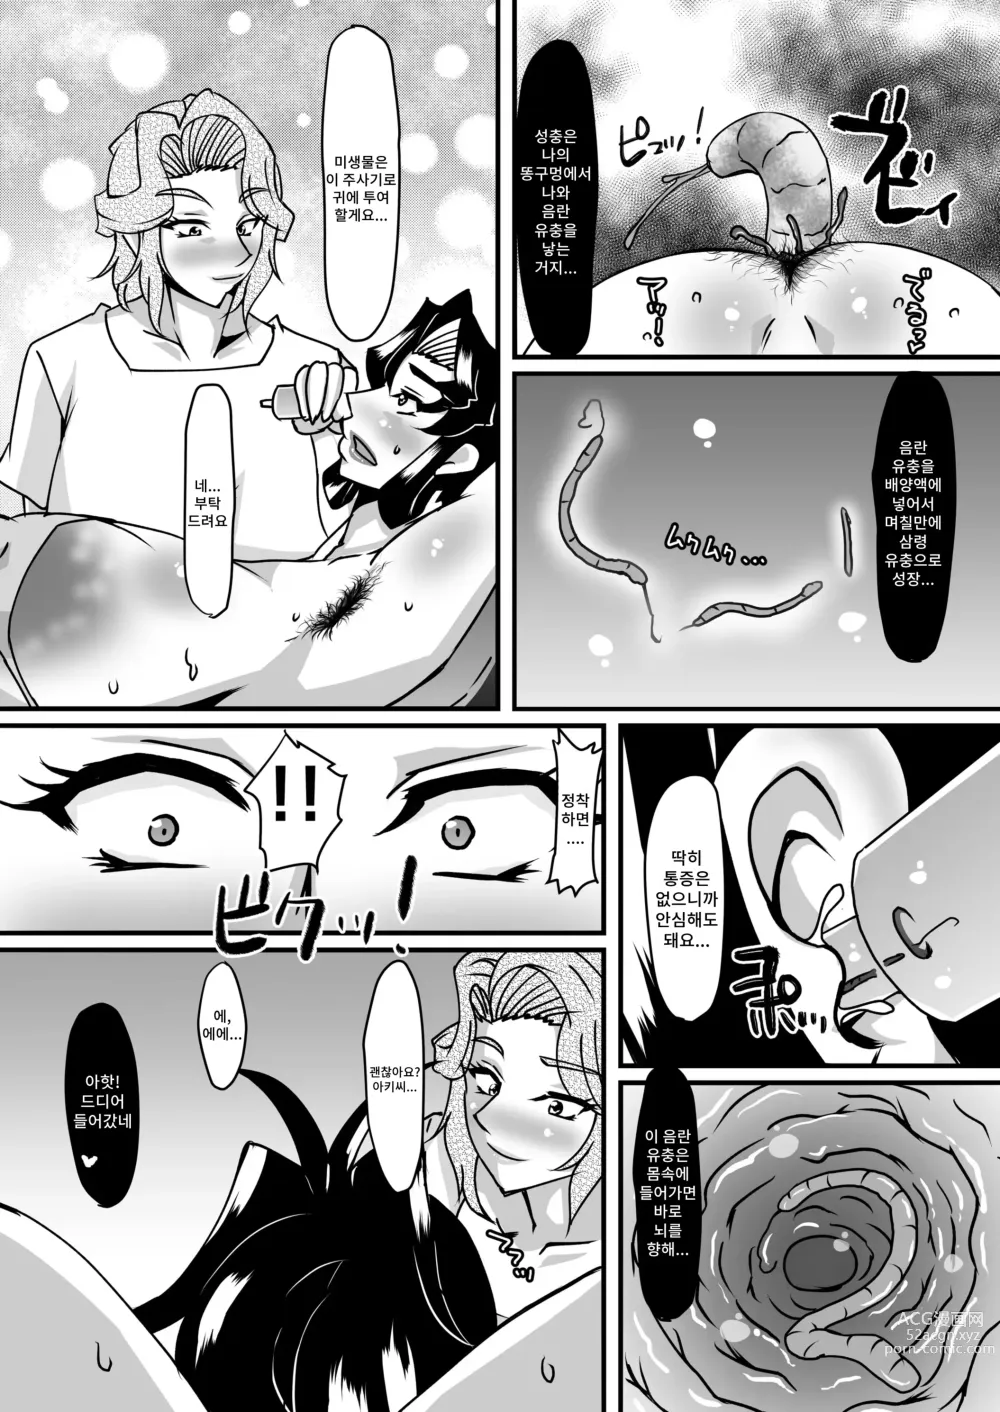 Page 23 of doujinshi 레이카 선생님의 음란충 똥구멍 에스테틱